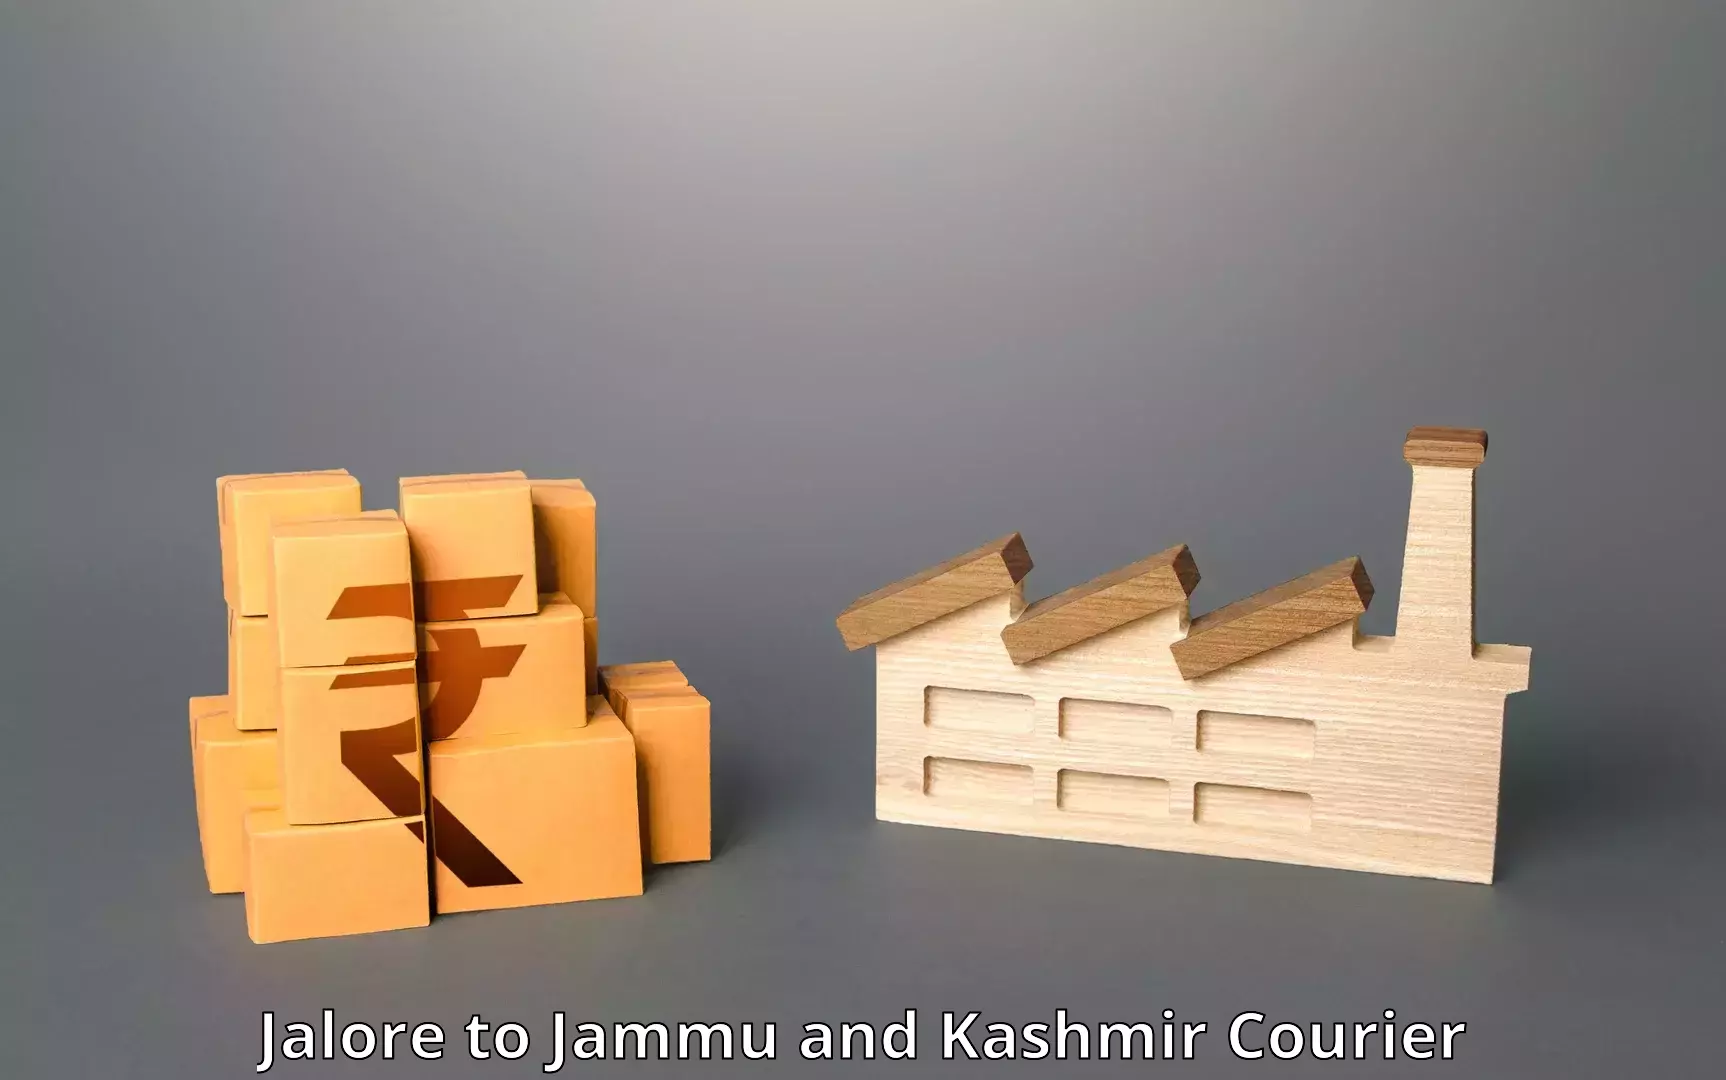 Courier service innovation Jalore to University of Kashmir Srinagar